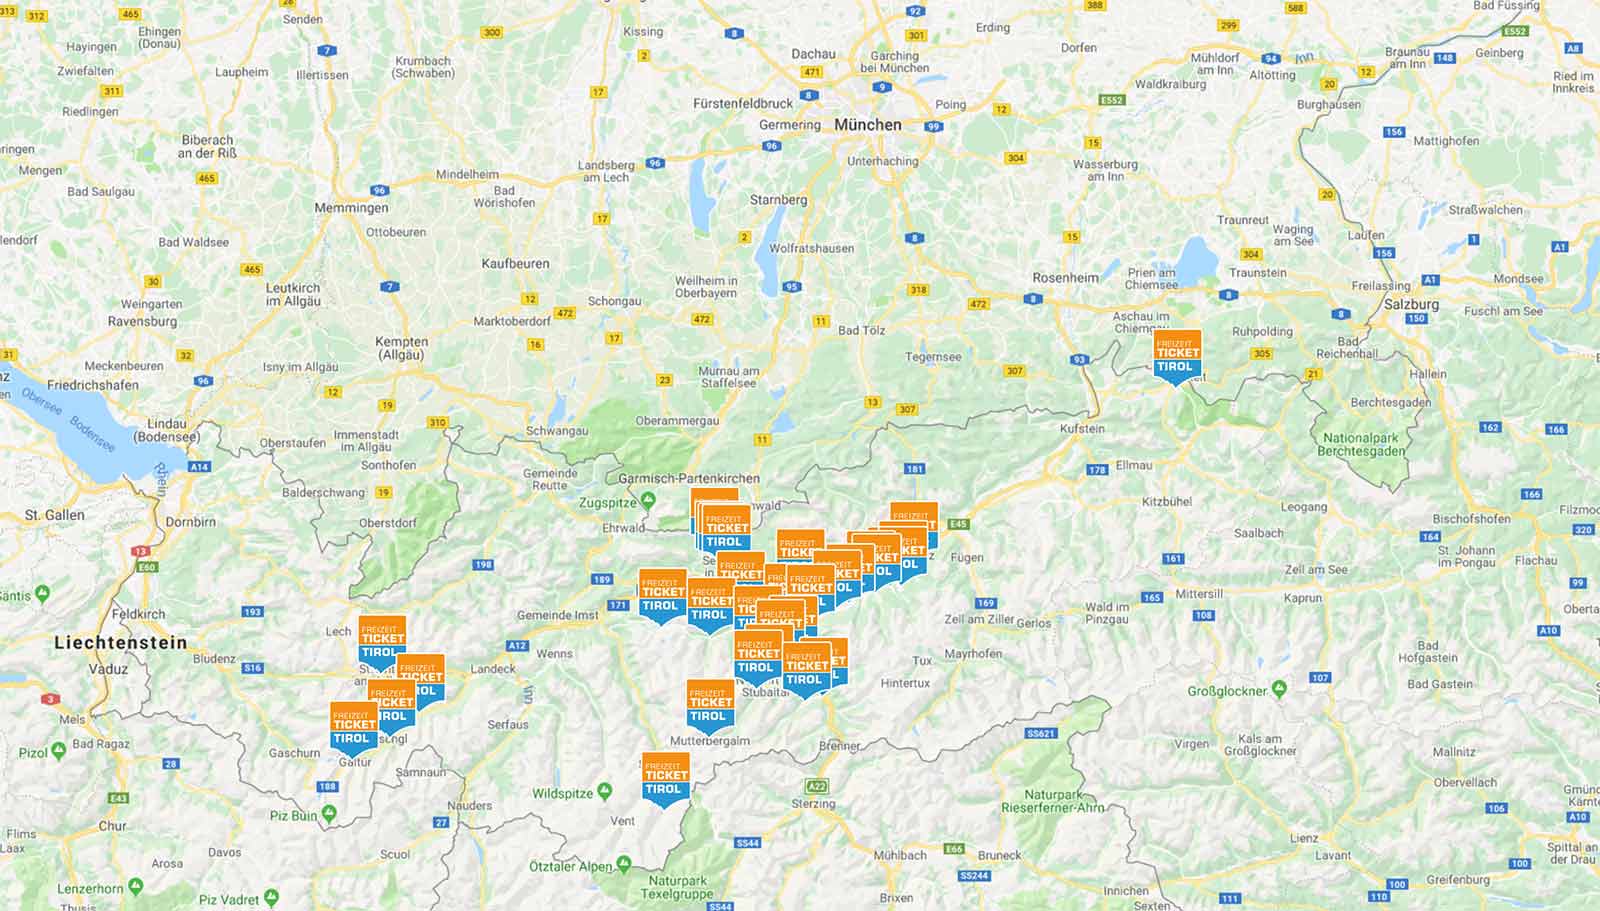 Übersicht: Die Gebiete des Freizeitticket Tirol 2019/2020